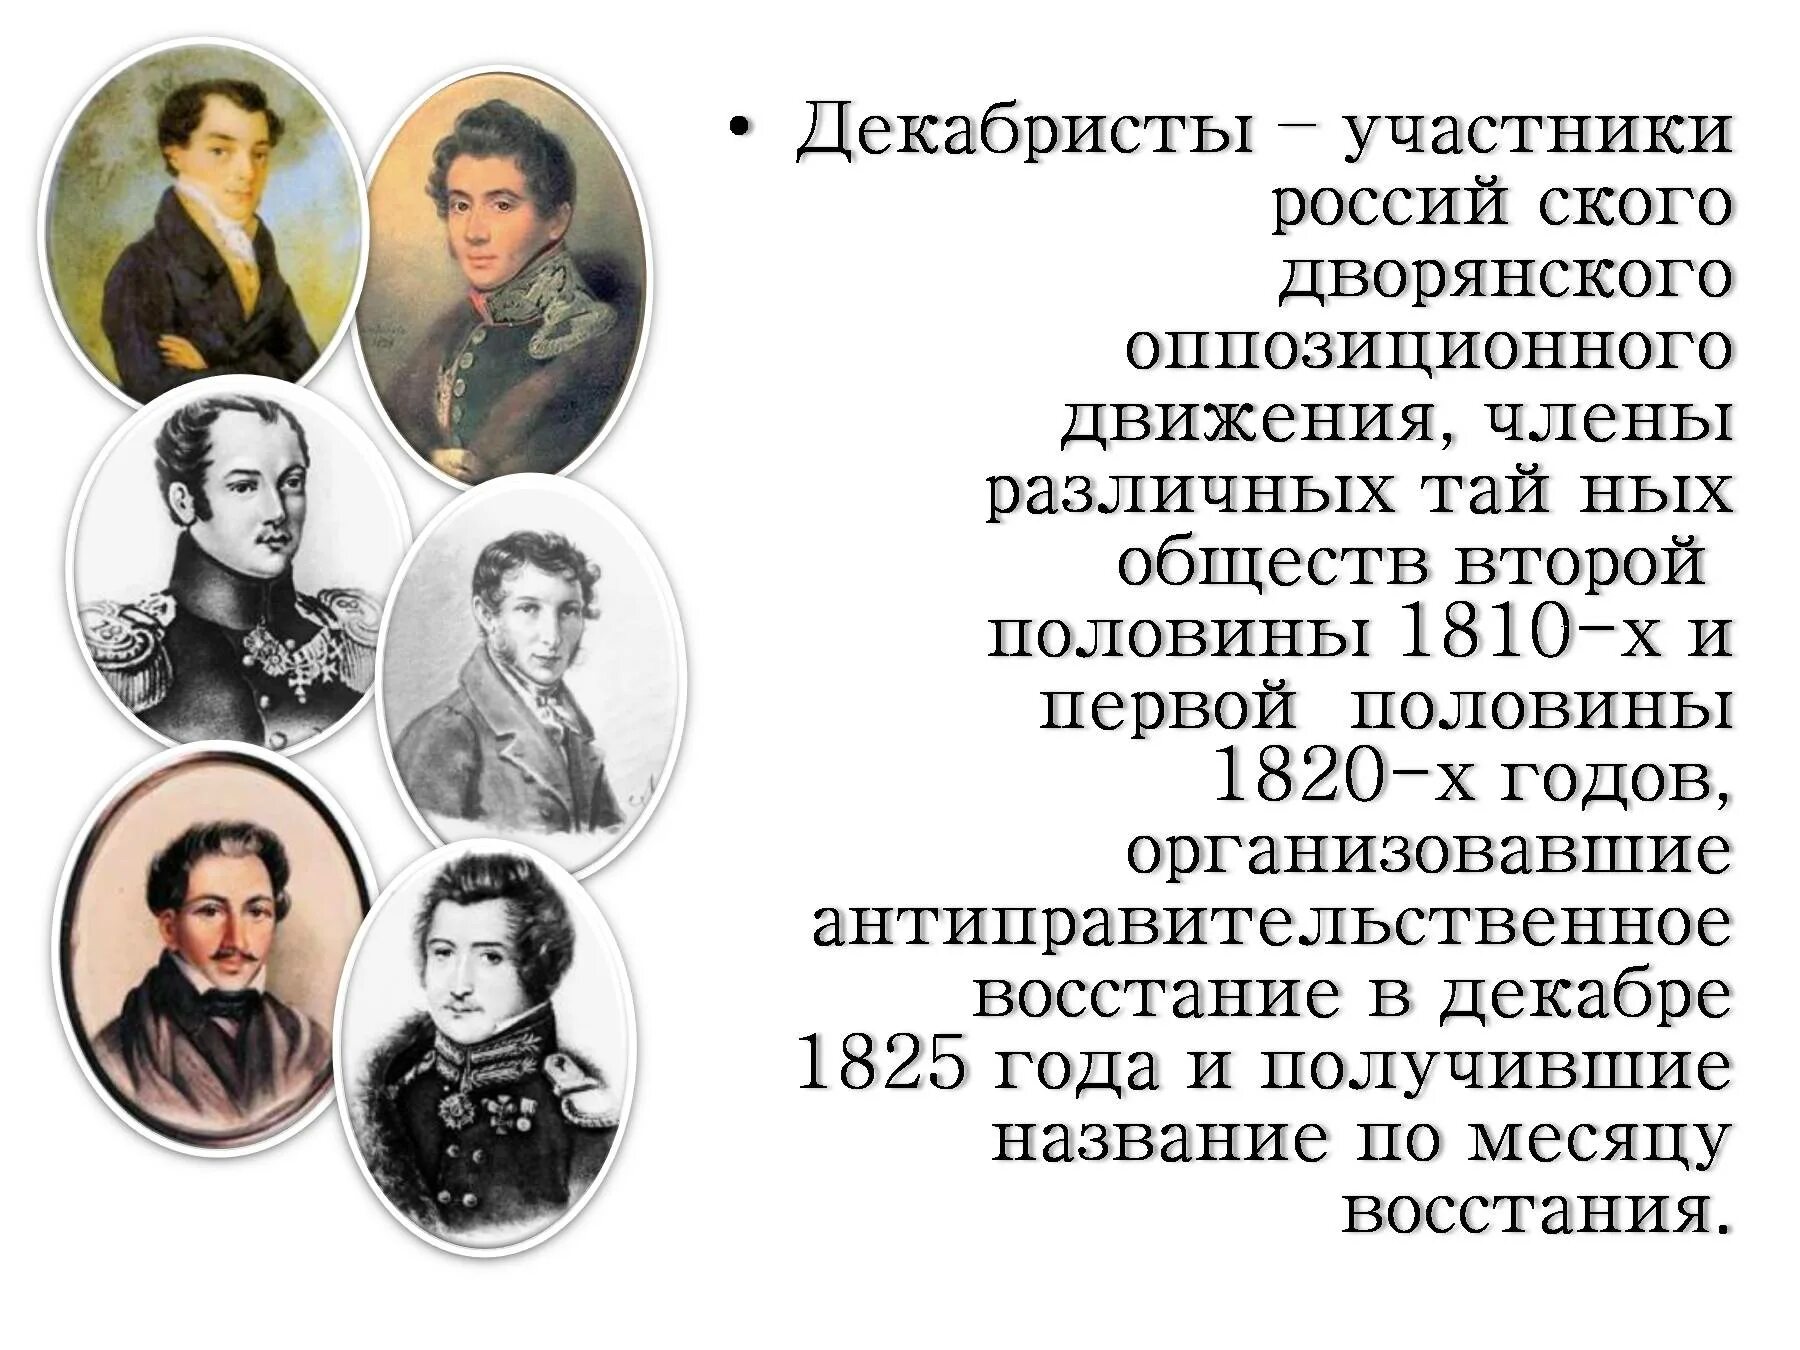 Участники тайных обществ 1825